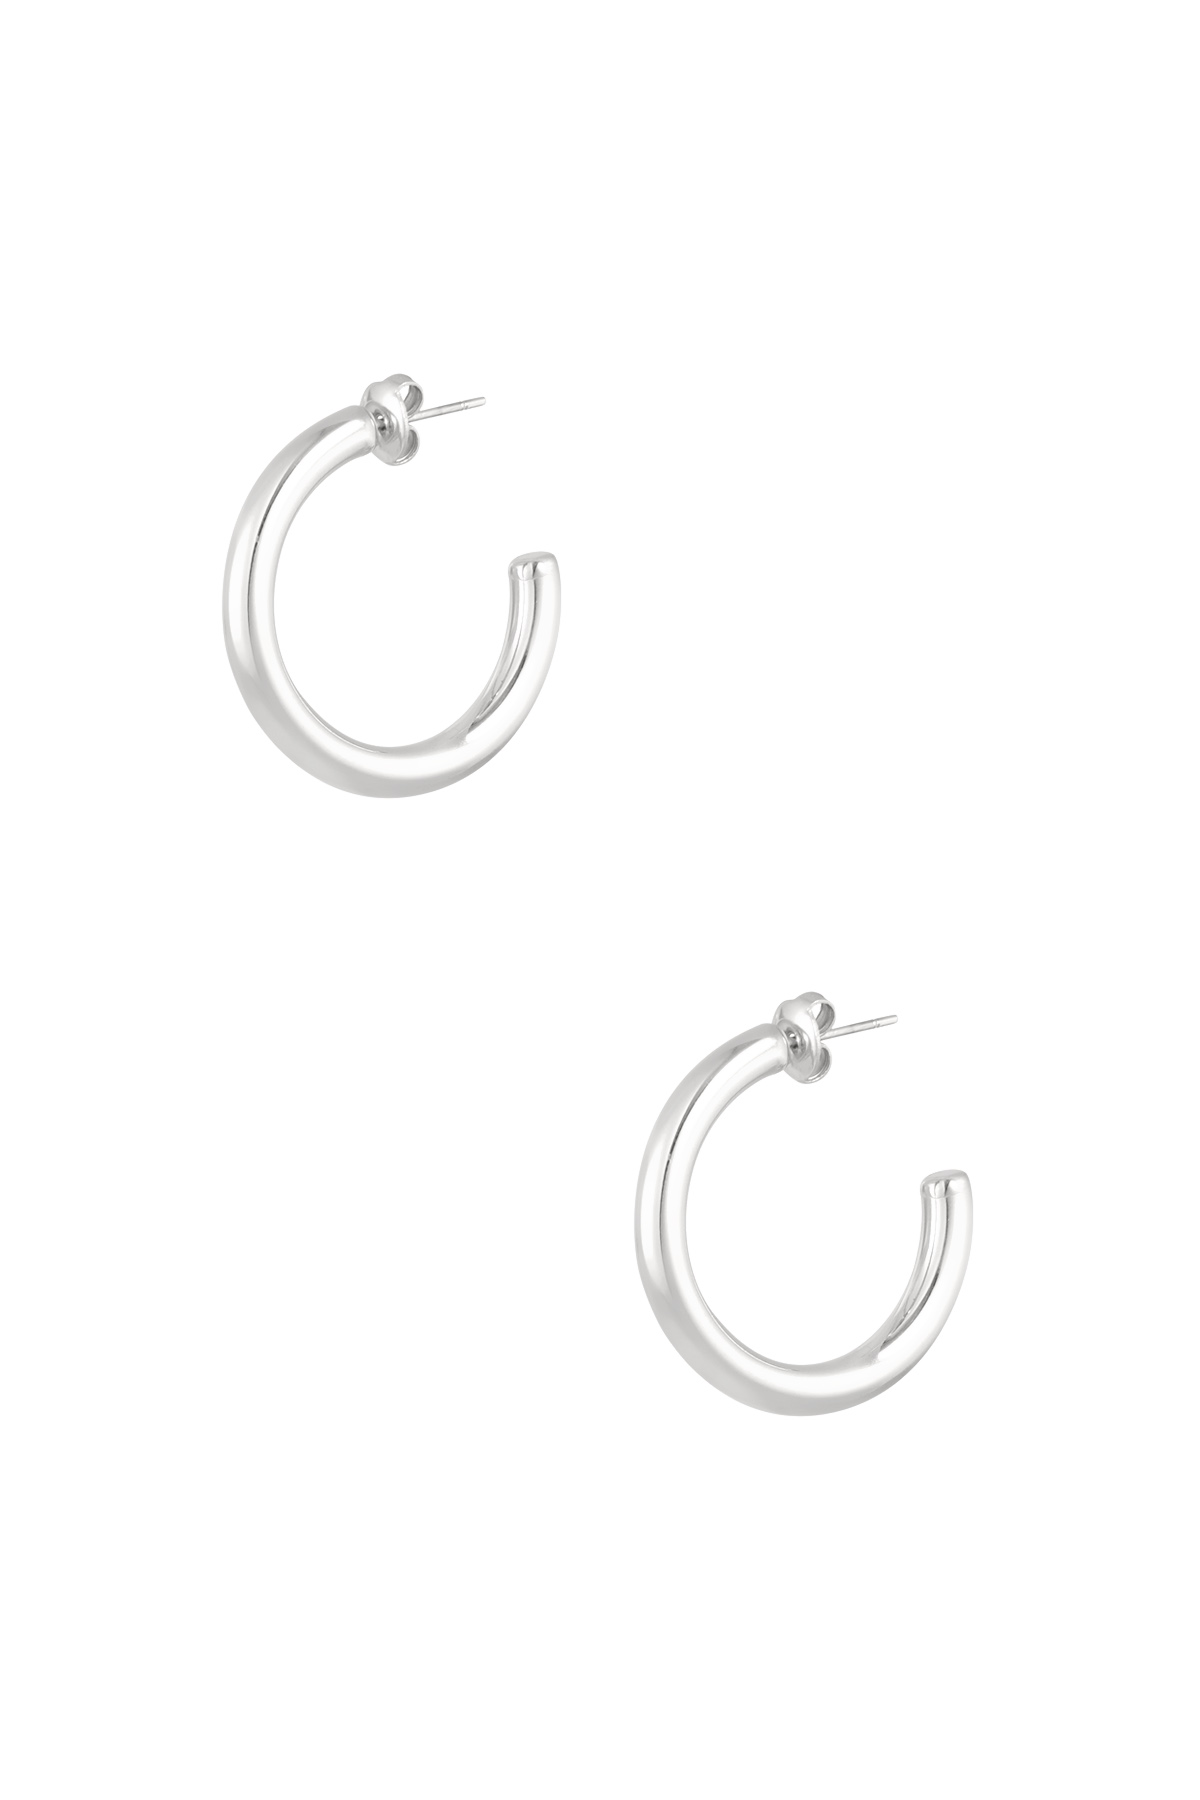 Ohrringe dick Basic klein - Silber h5 